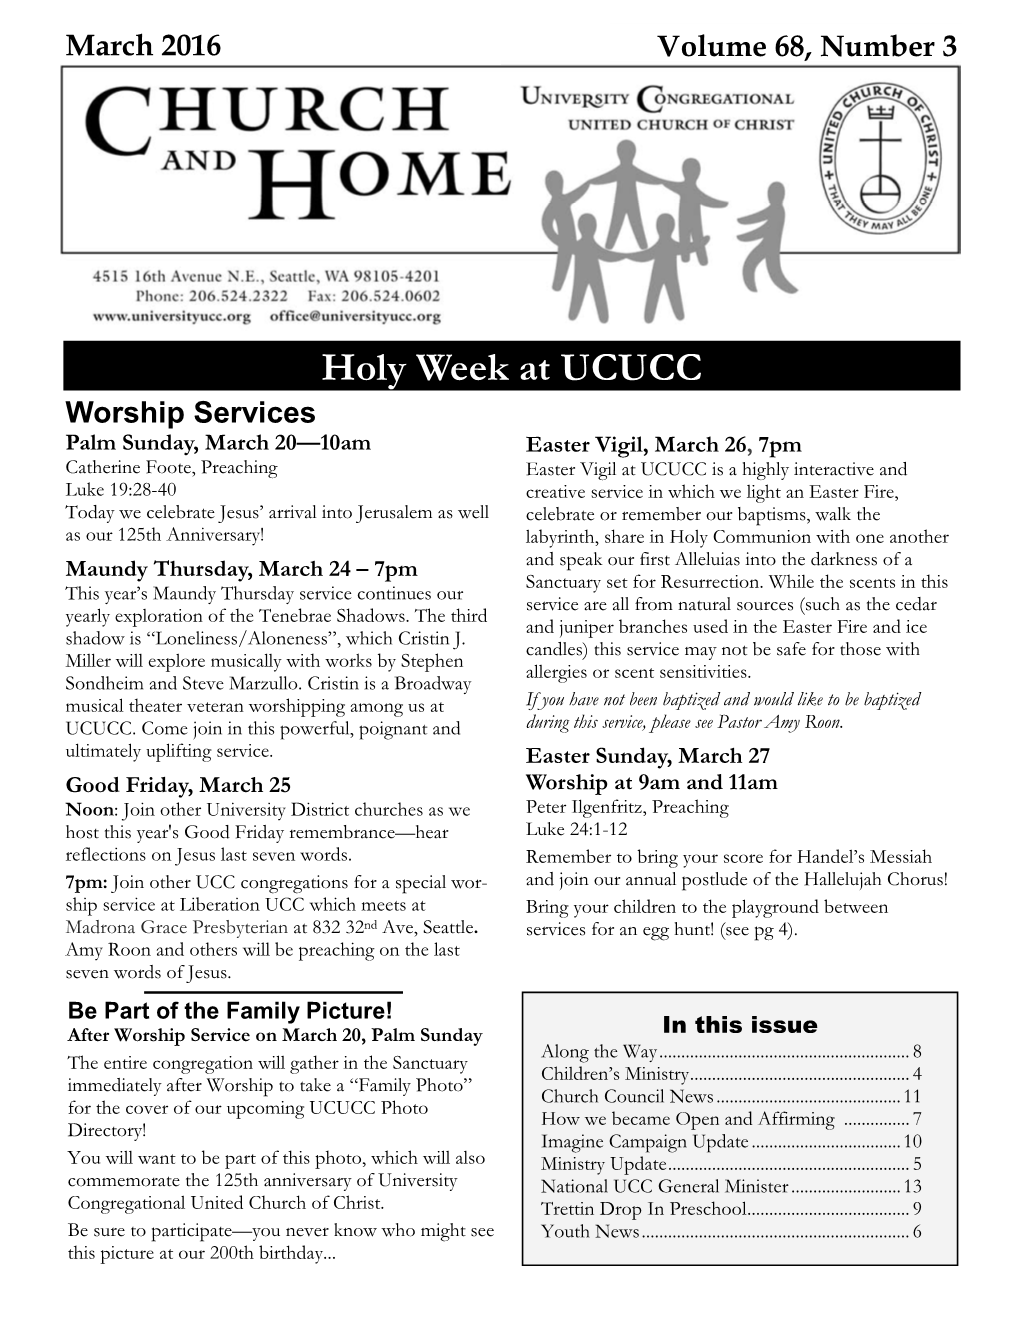 Holy Week at UCUCC